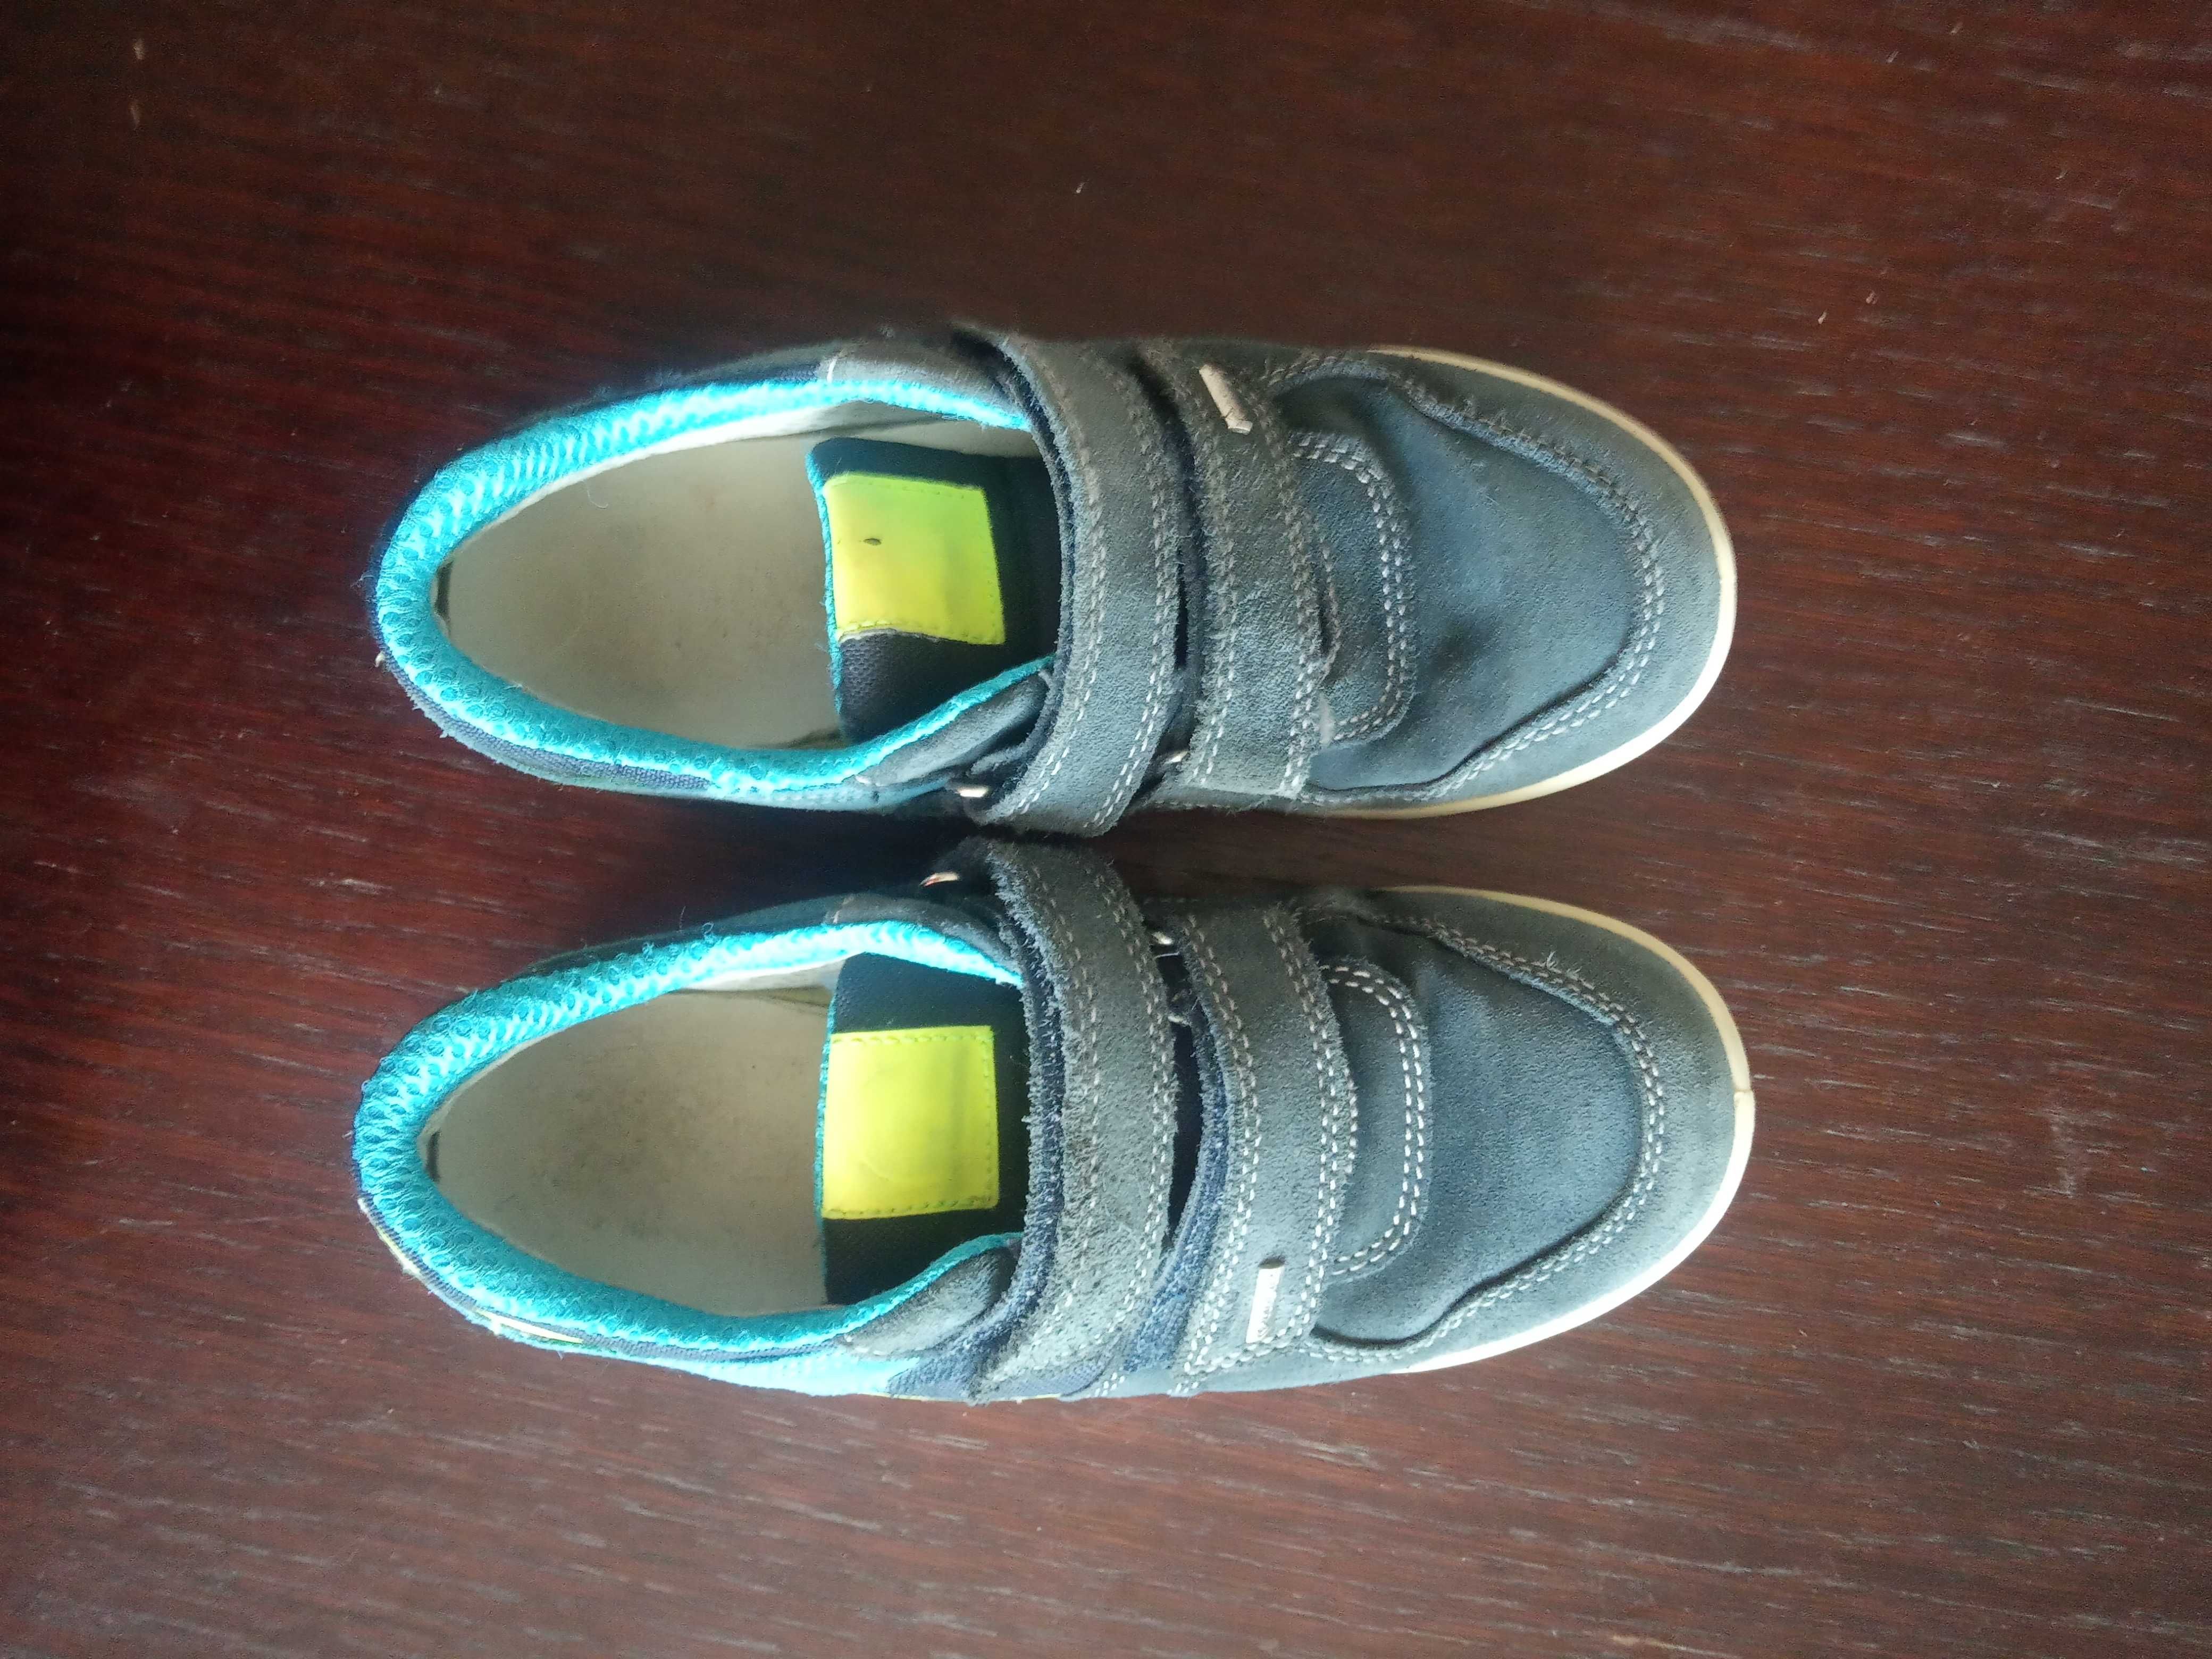 Buty dla chłopca Primigi - długość wkładki 22 cm